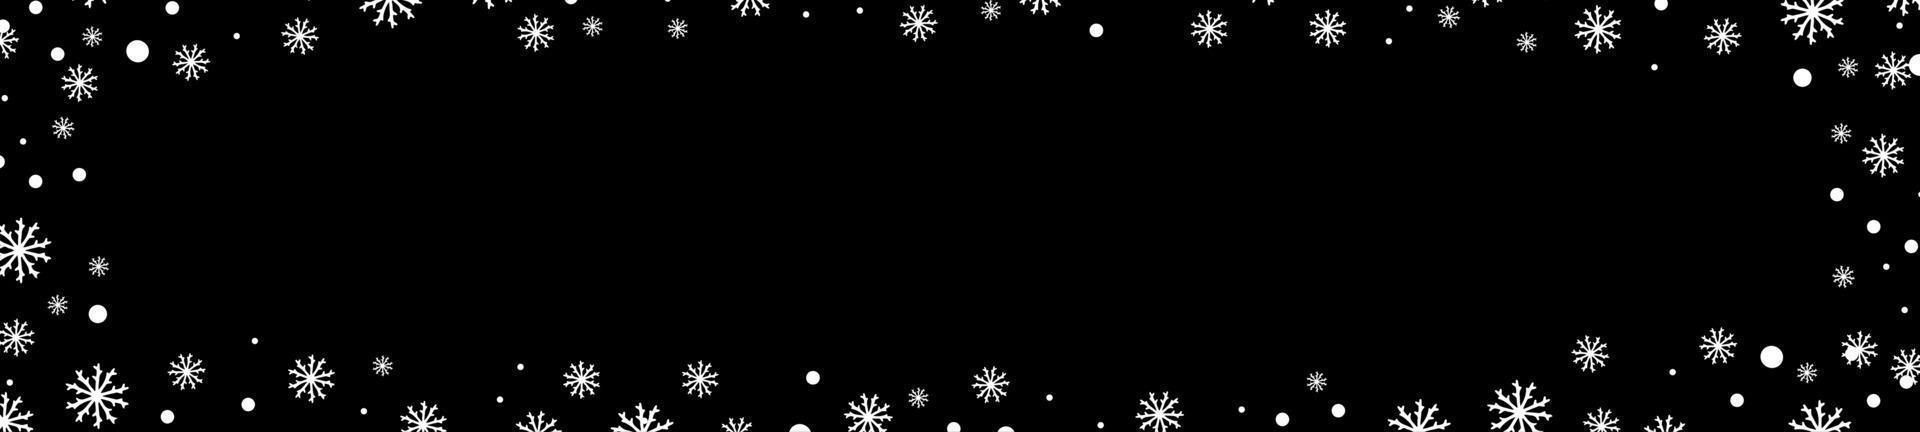 banner de fundo de inverno preto com flocos de neve brancos vetor